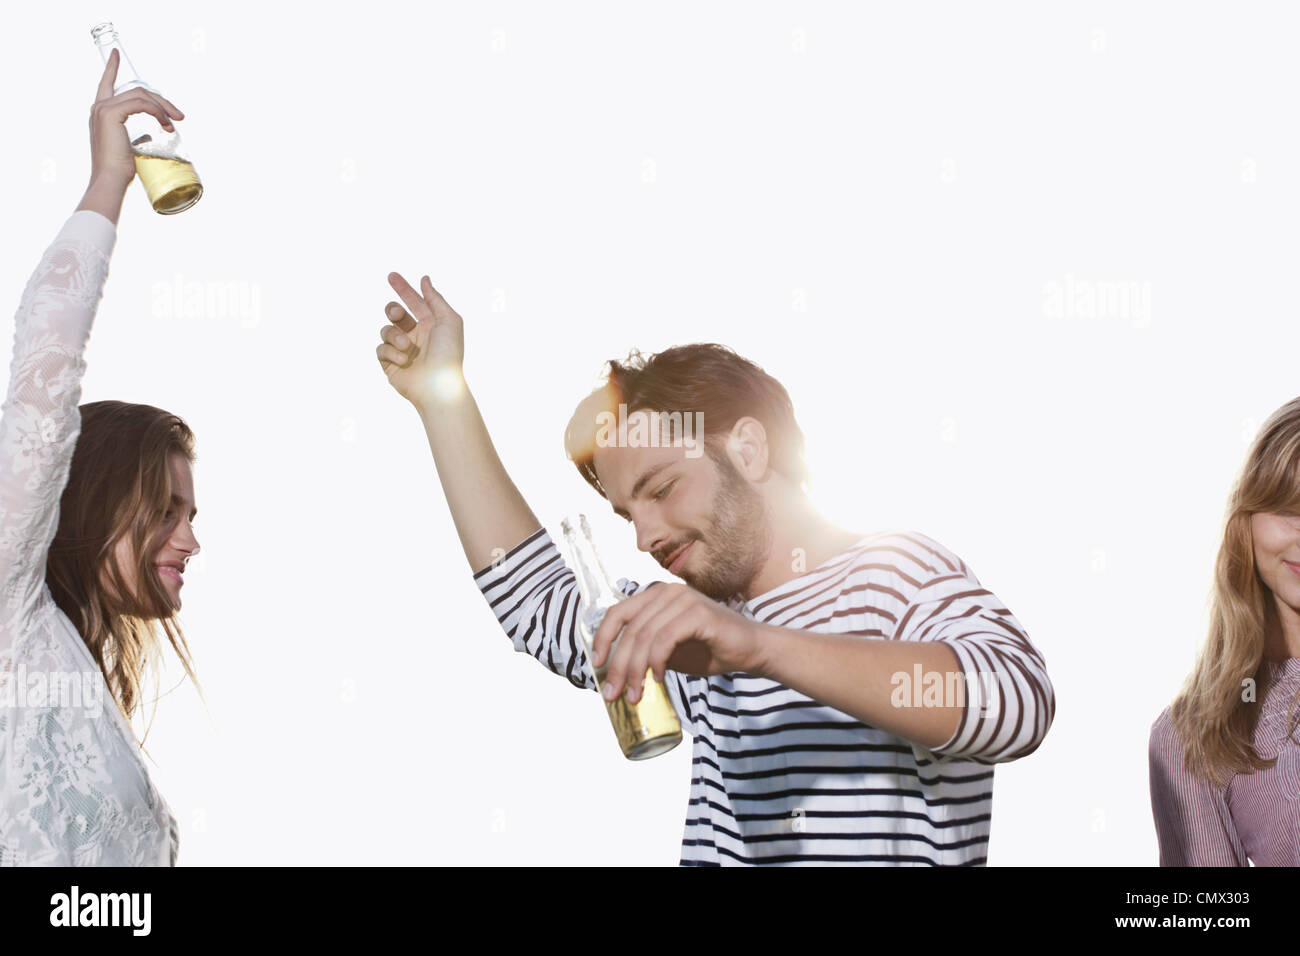 Deutschland, Köln, junger Mann und Frau tanzt mit Bierflaschen, Lächeln Stockfoto